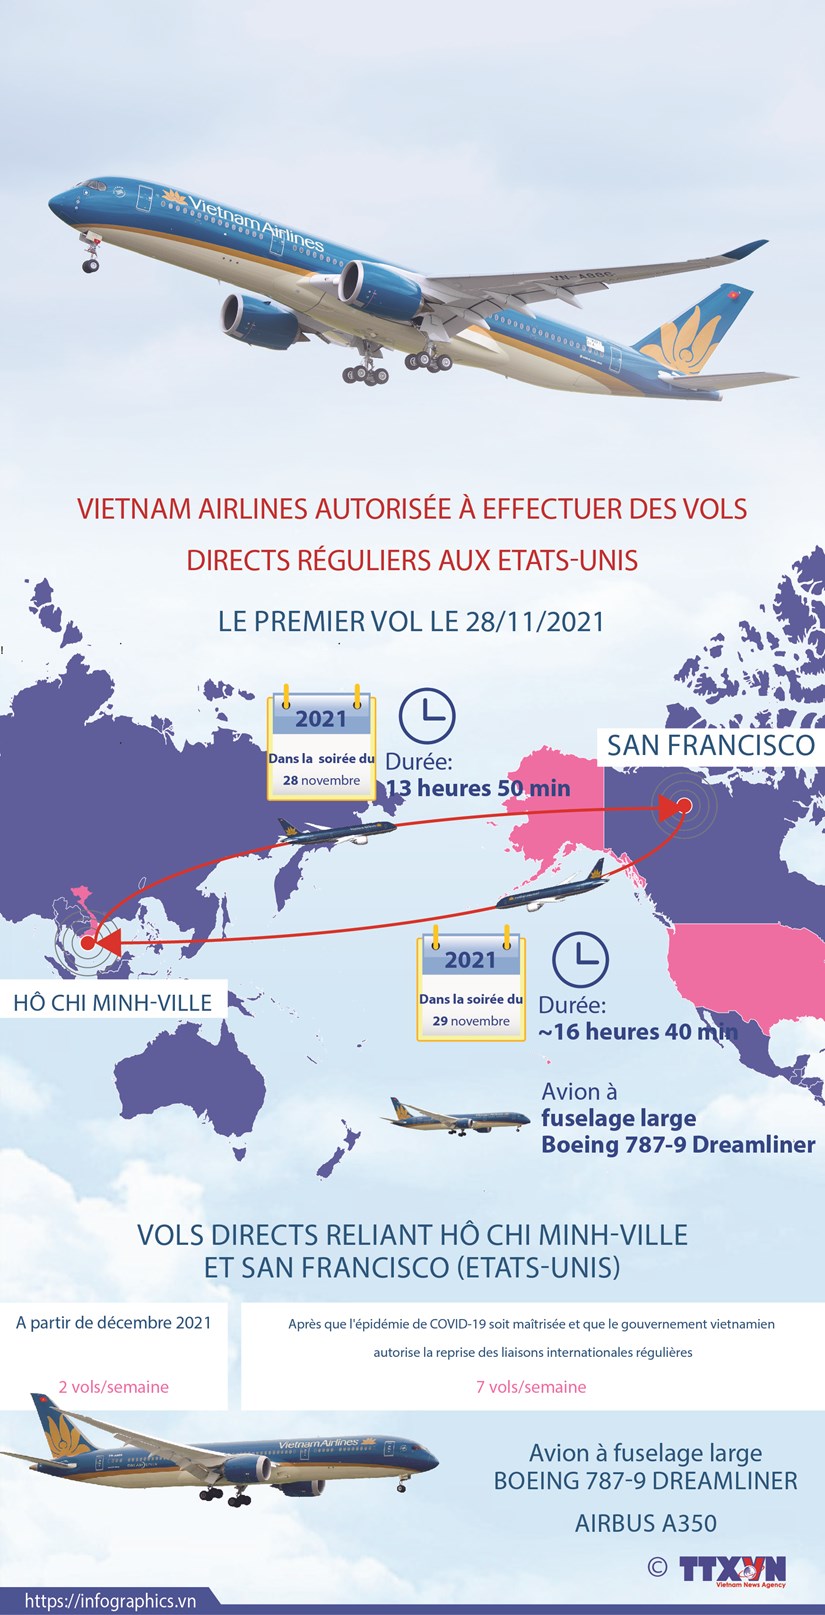 Vietnam Airlines autorisee a effectuer des vols directs reguliers aux Etats-Unis hinh anh 1